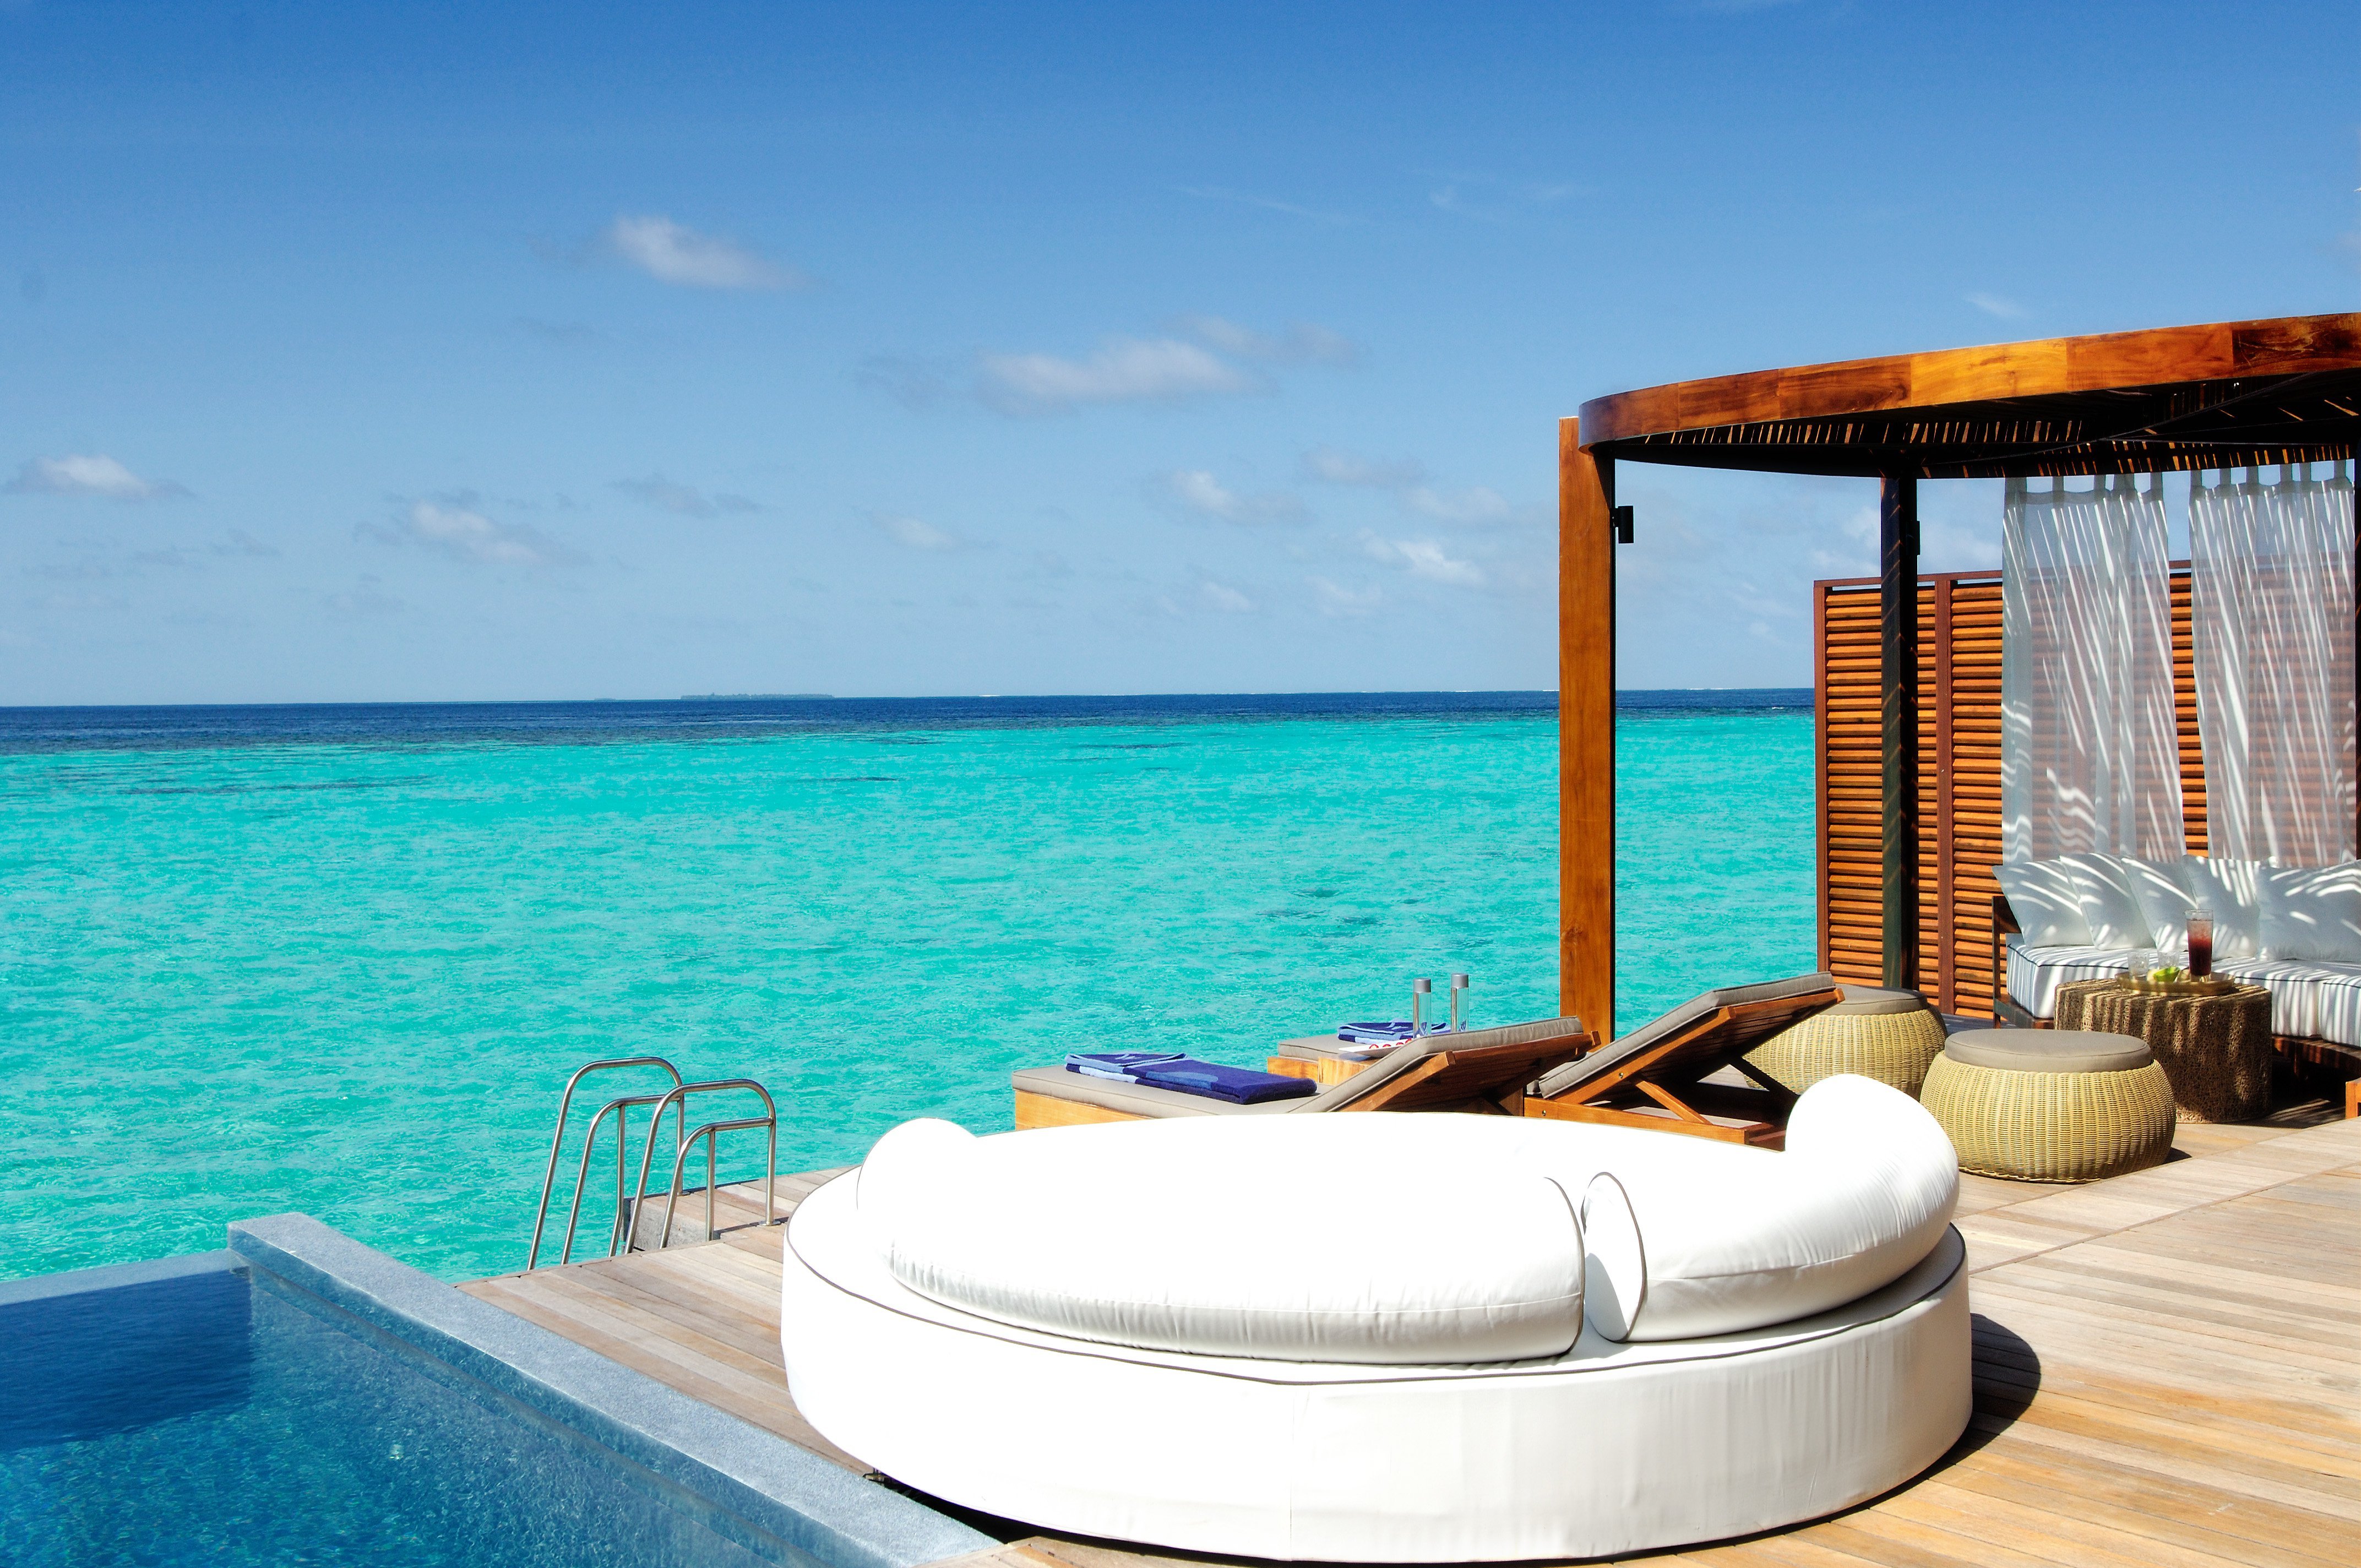 Вода luxury. W Retreat & Spa 5*, Мальдивы.. Отель Ocean Retreat Spa Мальдивы. Отель w Retreat & Spa. Kurumba Maldives 5 Мальдивы.